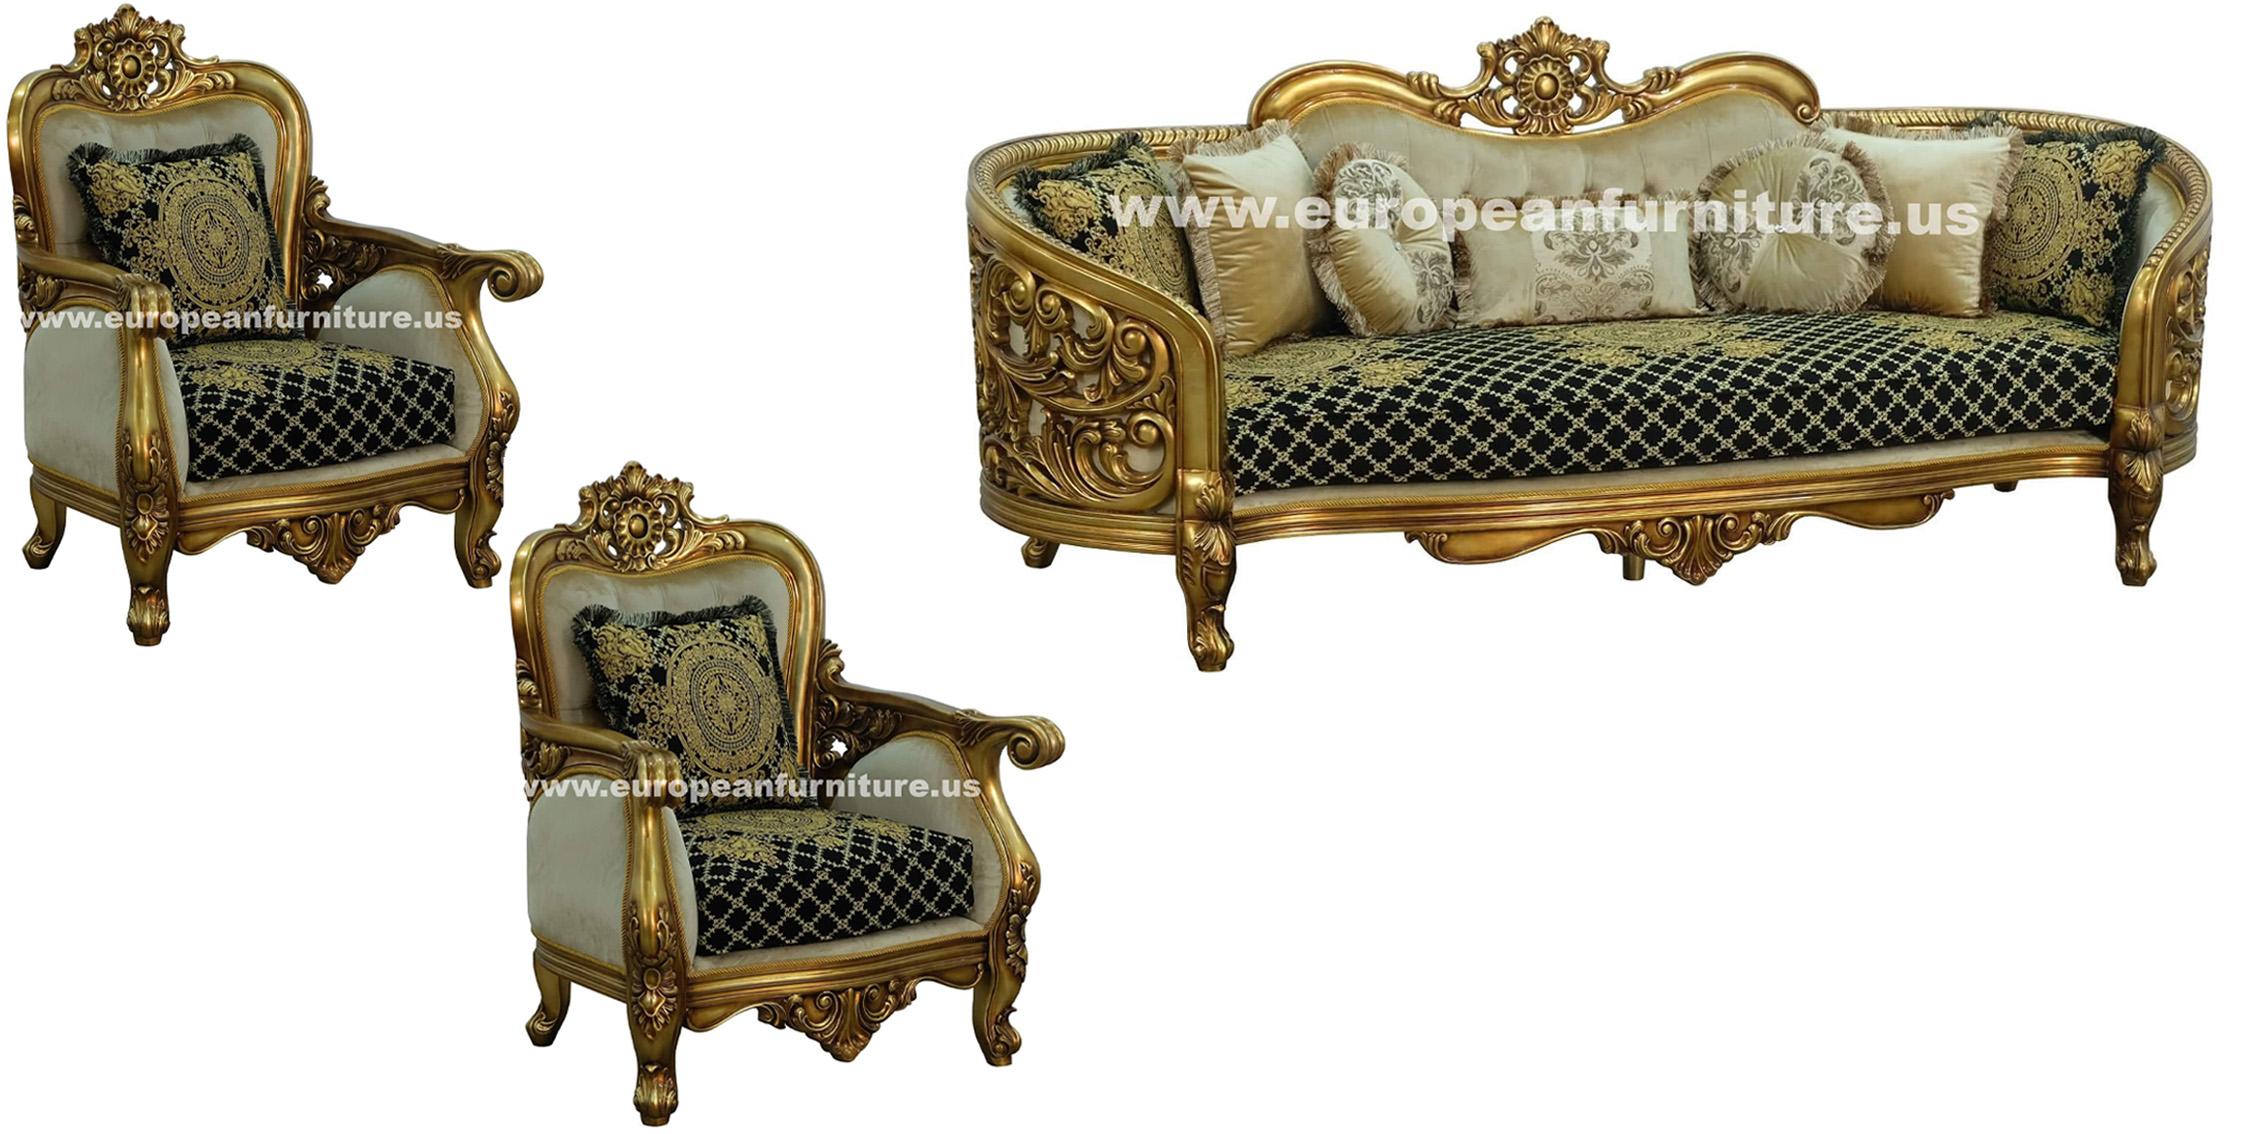 

    
30018-S Classic Antique Bronze Black-Gold Fabric 30018 BELLAGIO Sofa EUROPEAN FURNITURE
